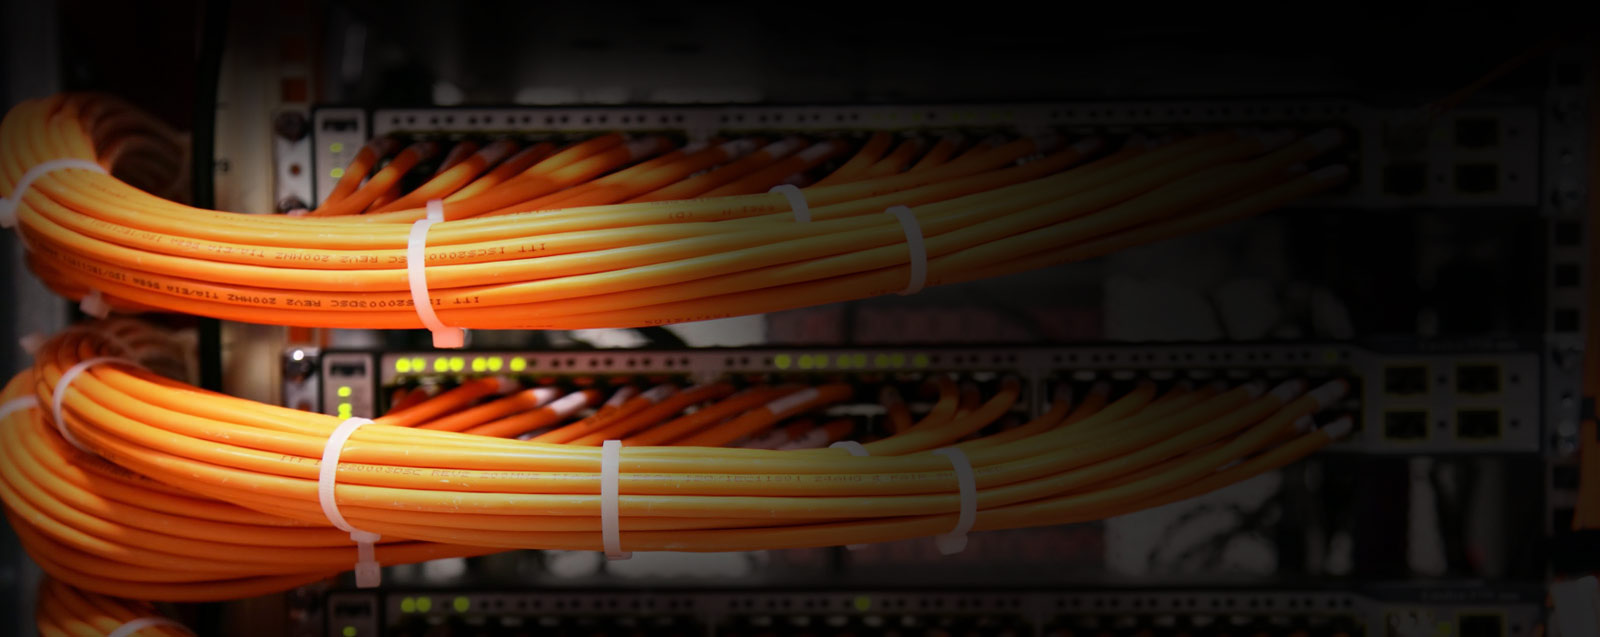 локально вычислительные сети<br>структурированные кабельные системы